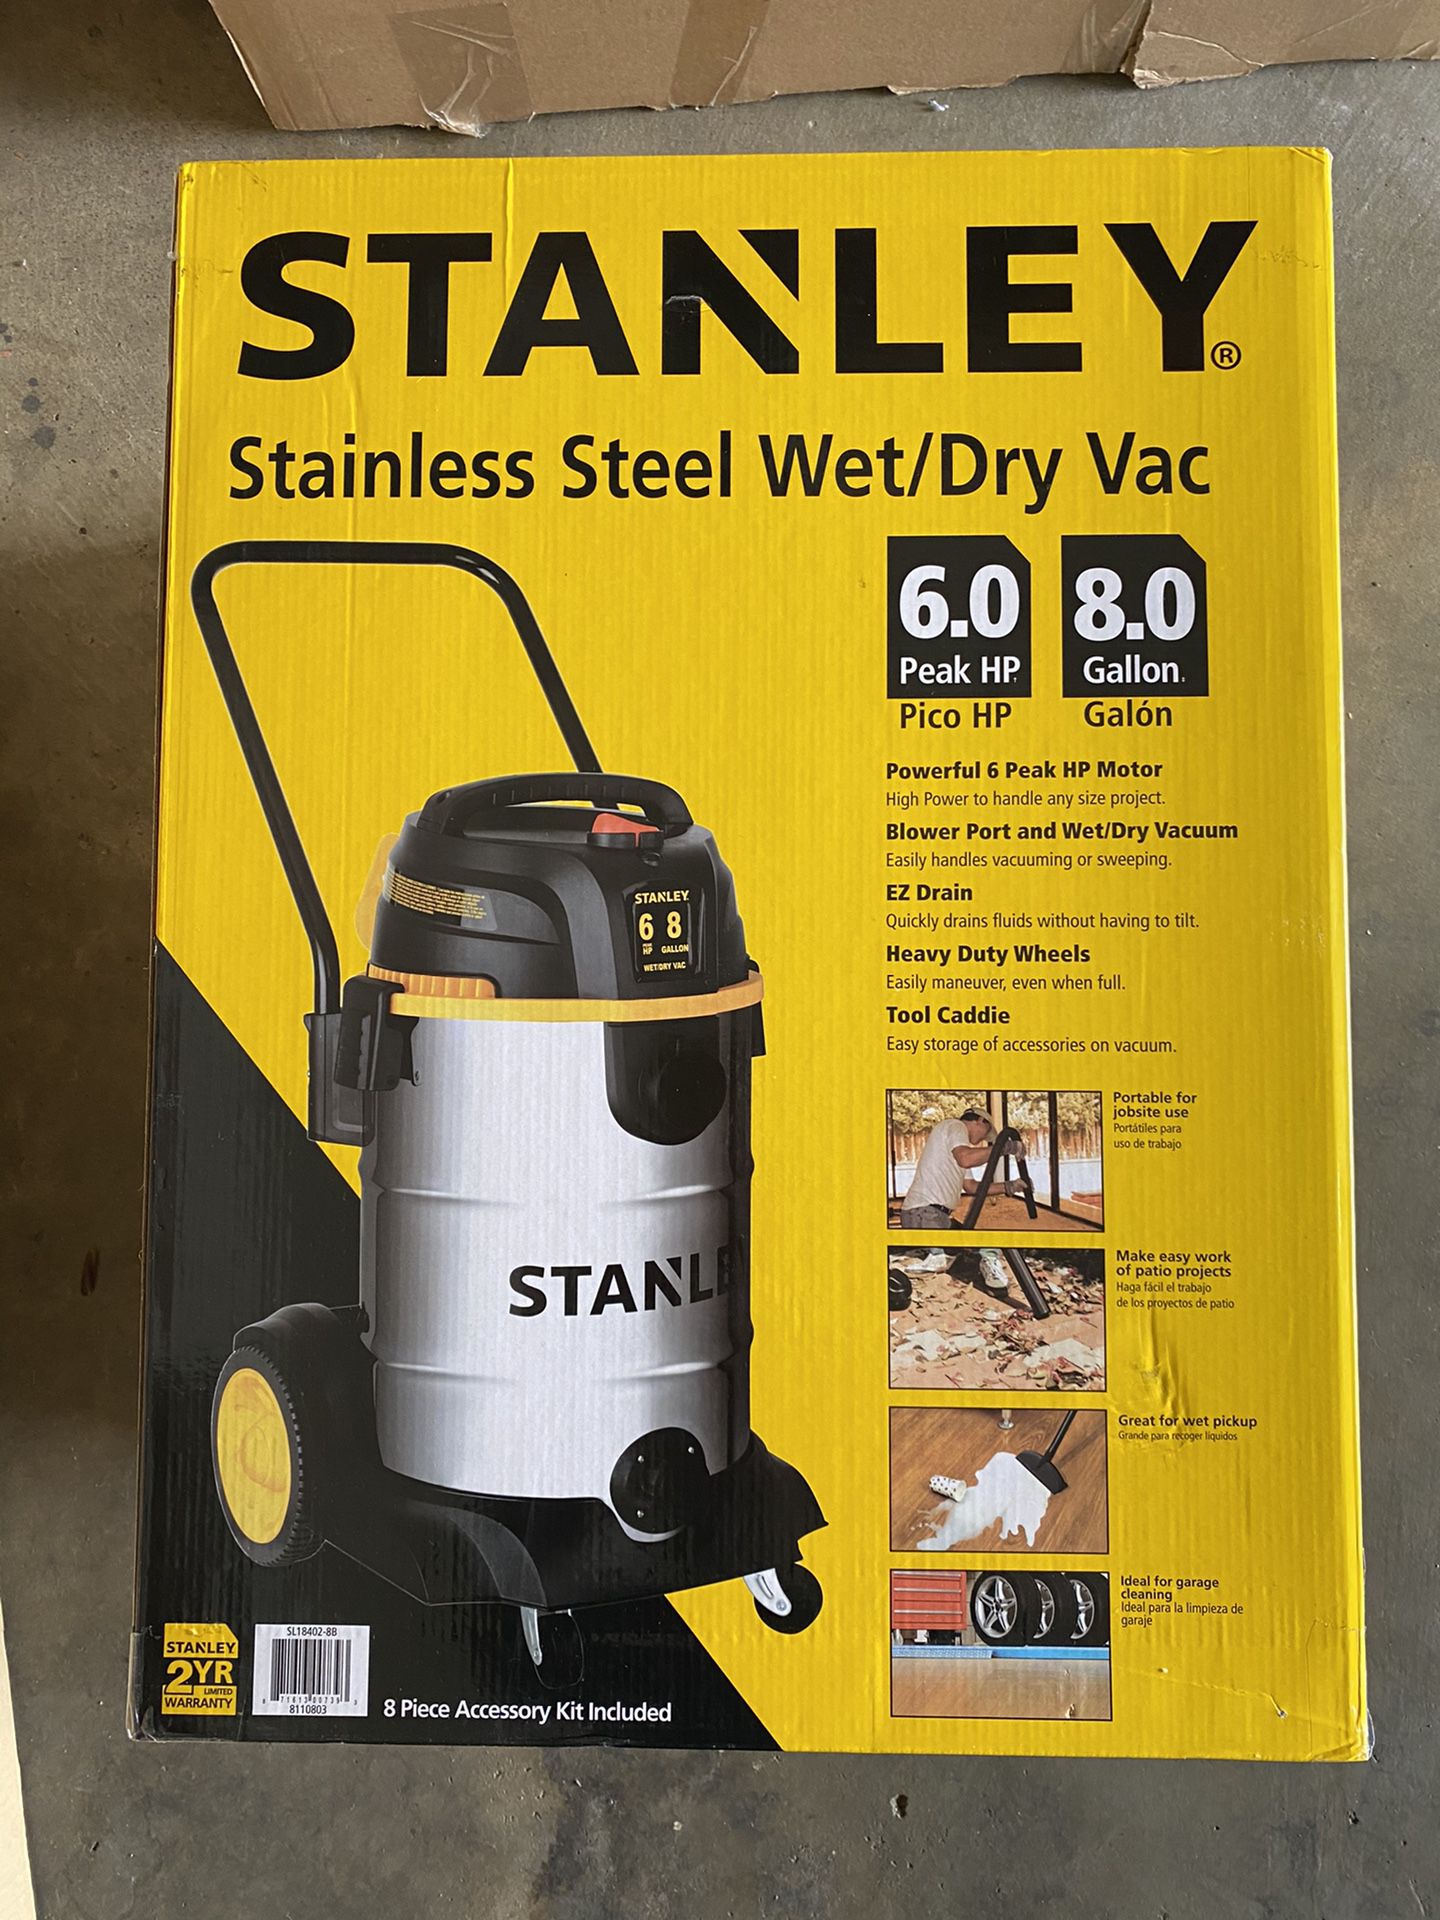 Stanley, 8 Gallon 6.0 Peak HP Stainless Steel Wet Dry Vac